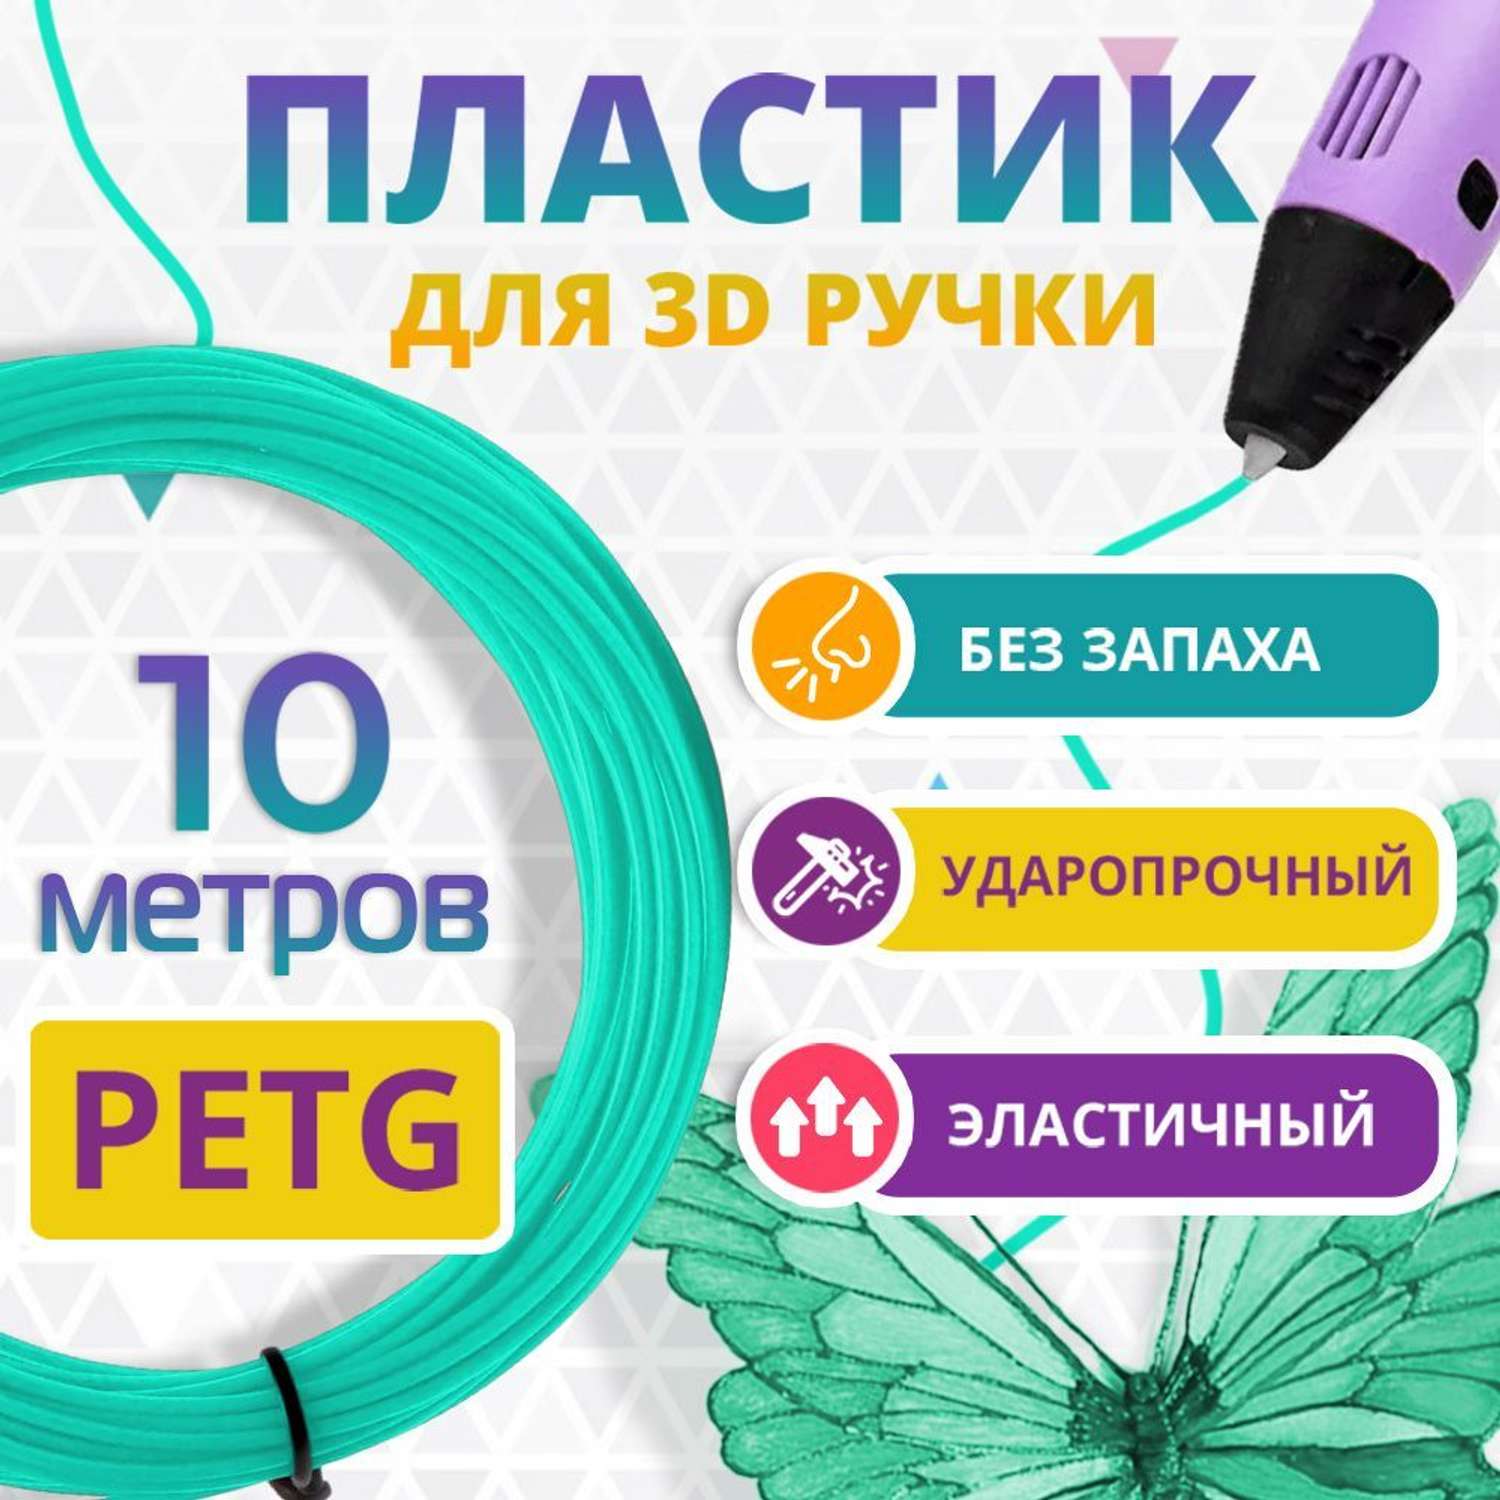 Пластик для 3д ручки PET-G Funtasy 10 метров цвет бирюзовый - фото 2